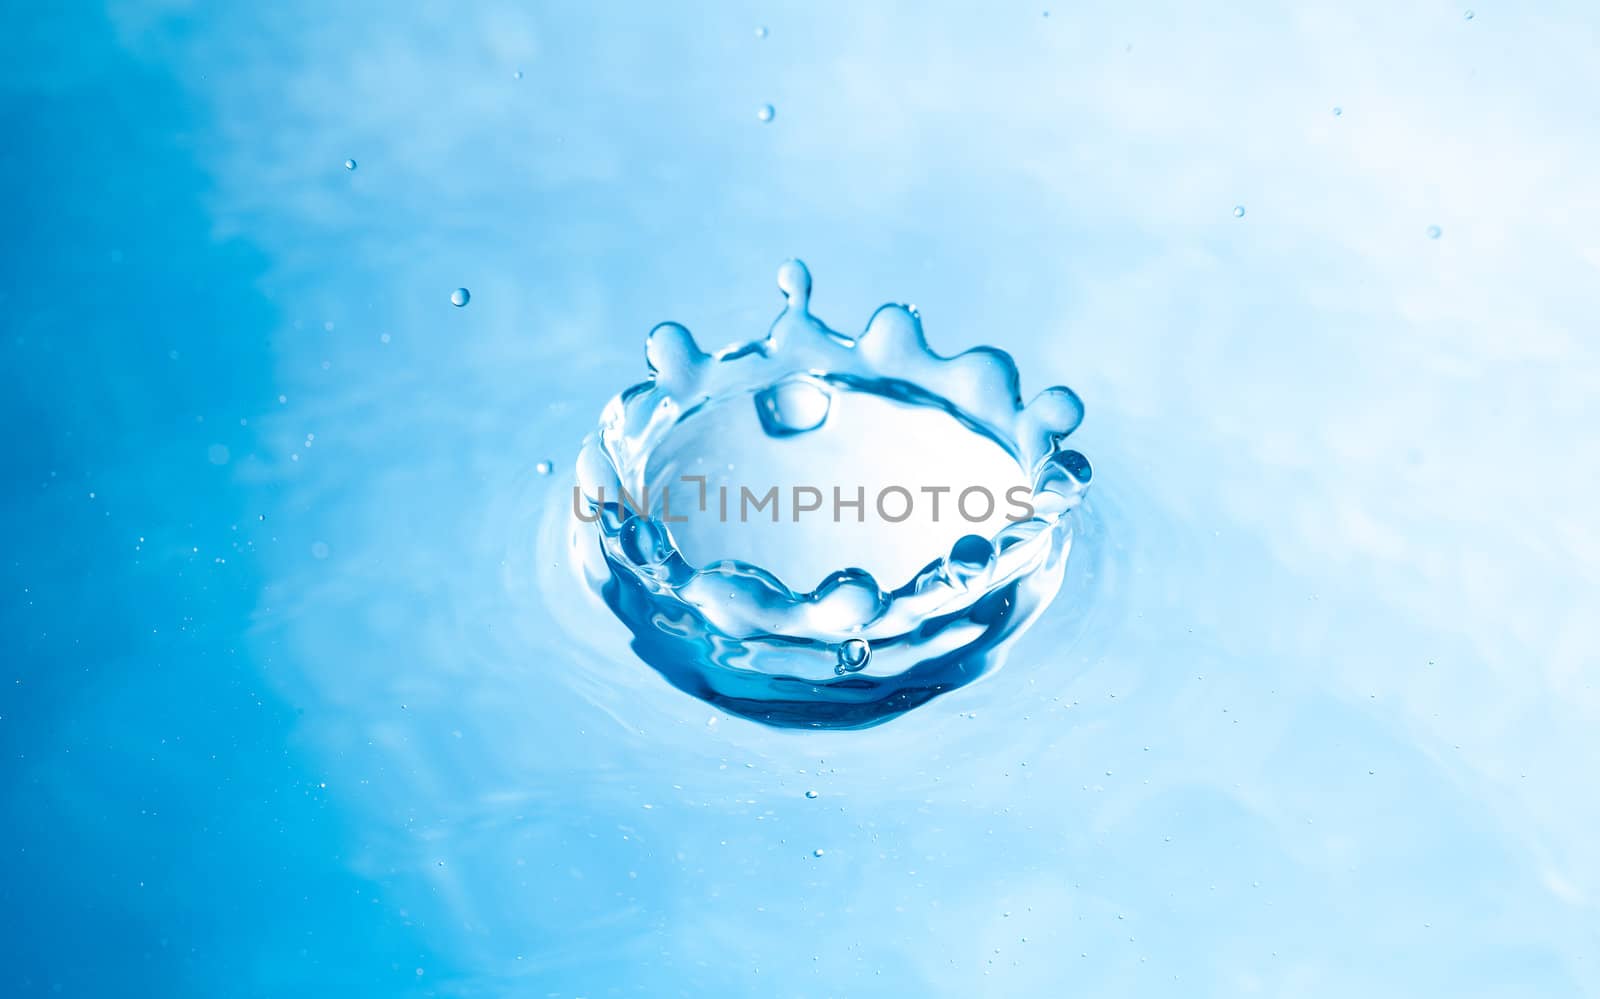 Shape of drop of water splash by moggara12